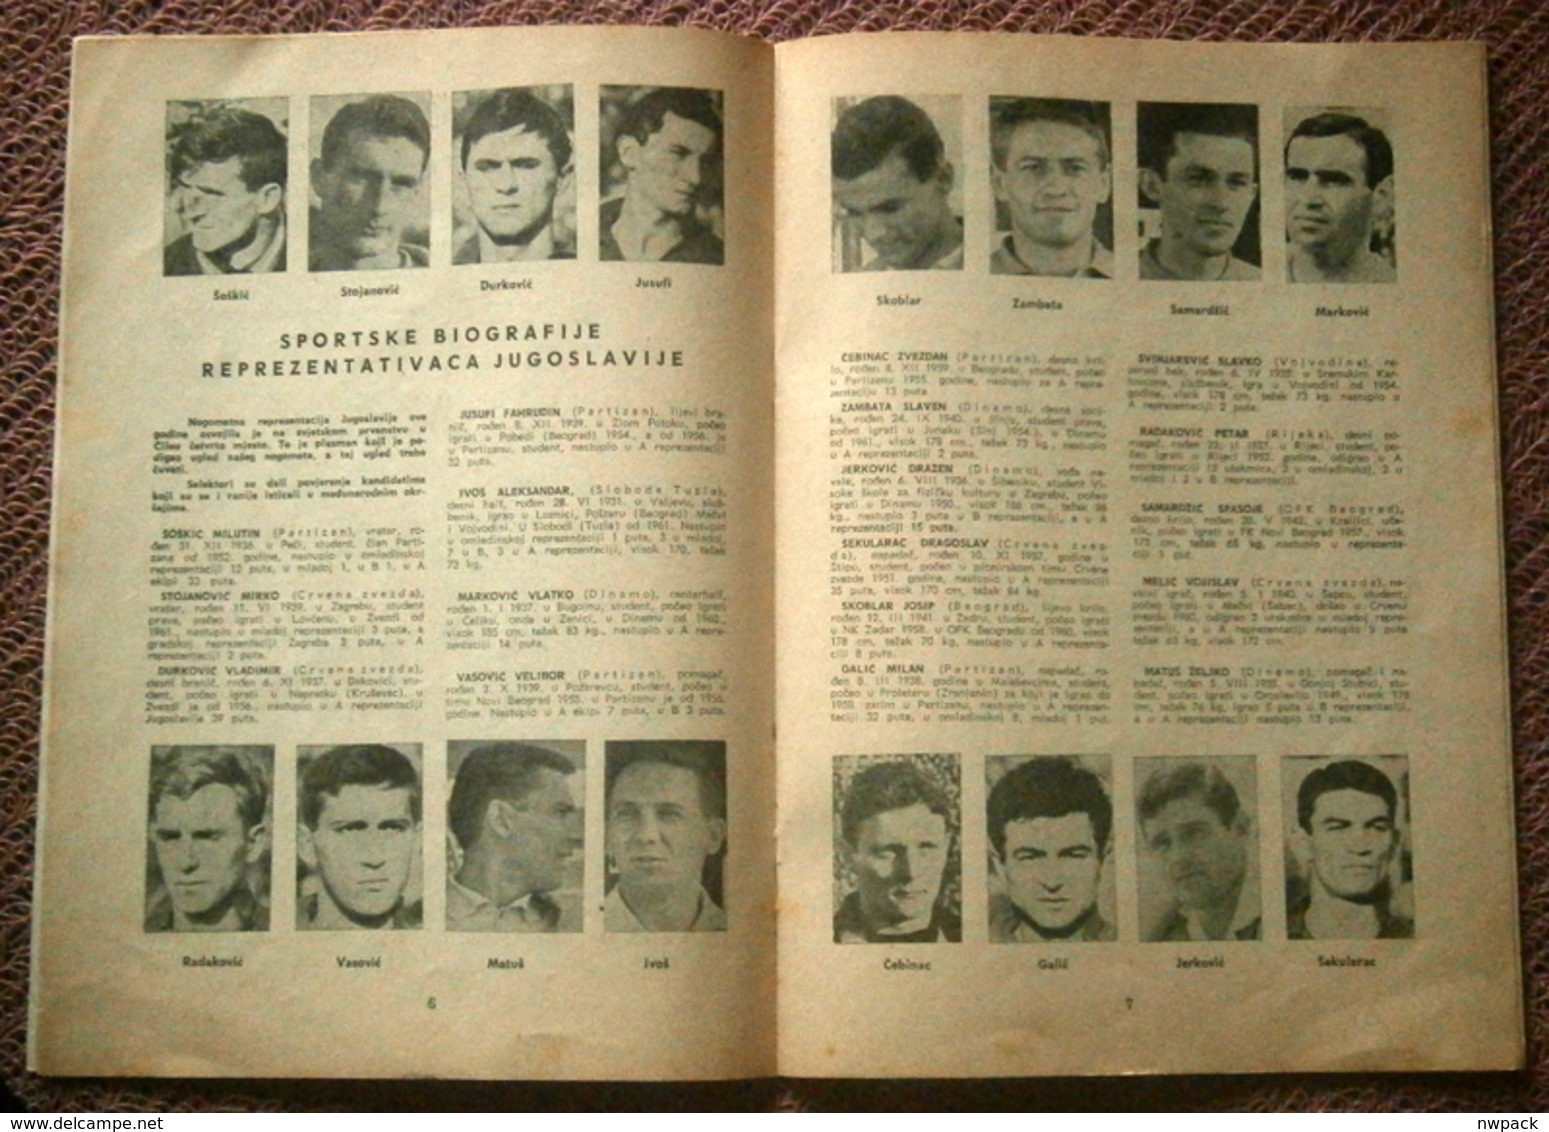 Football / Soccer Match: YUGOSLAVIA - W. GERMANY, Zagreb 30.IX.1962. - Program and Ticket